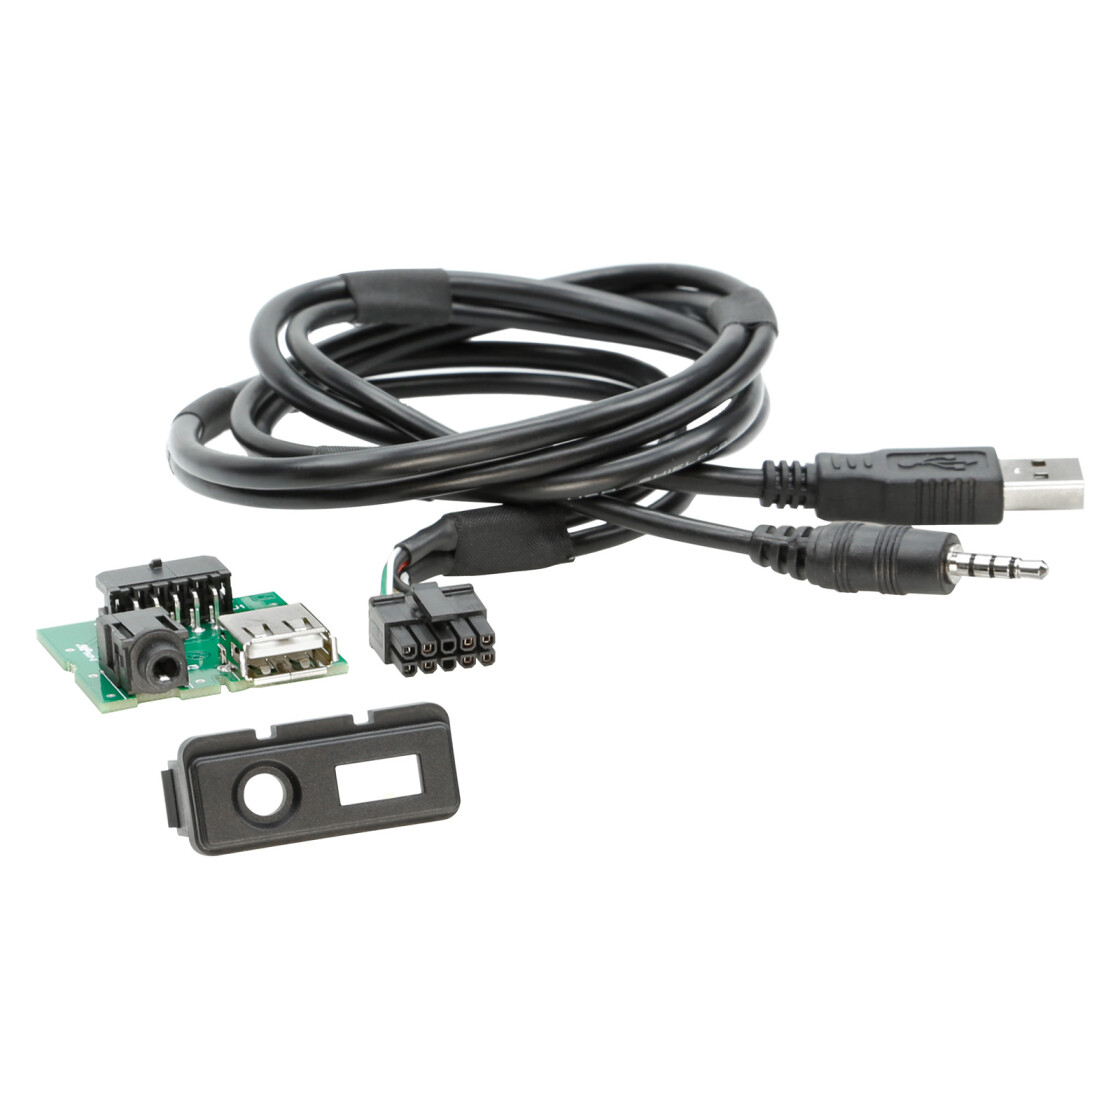 AUX-Kabel für iPod/iPhone - Mazdashop